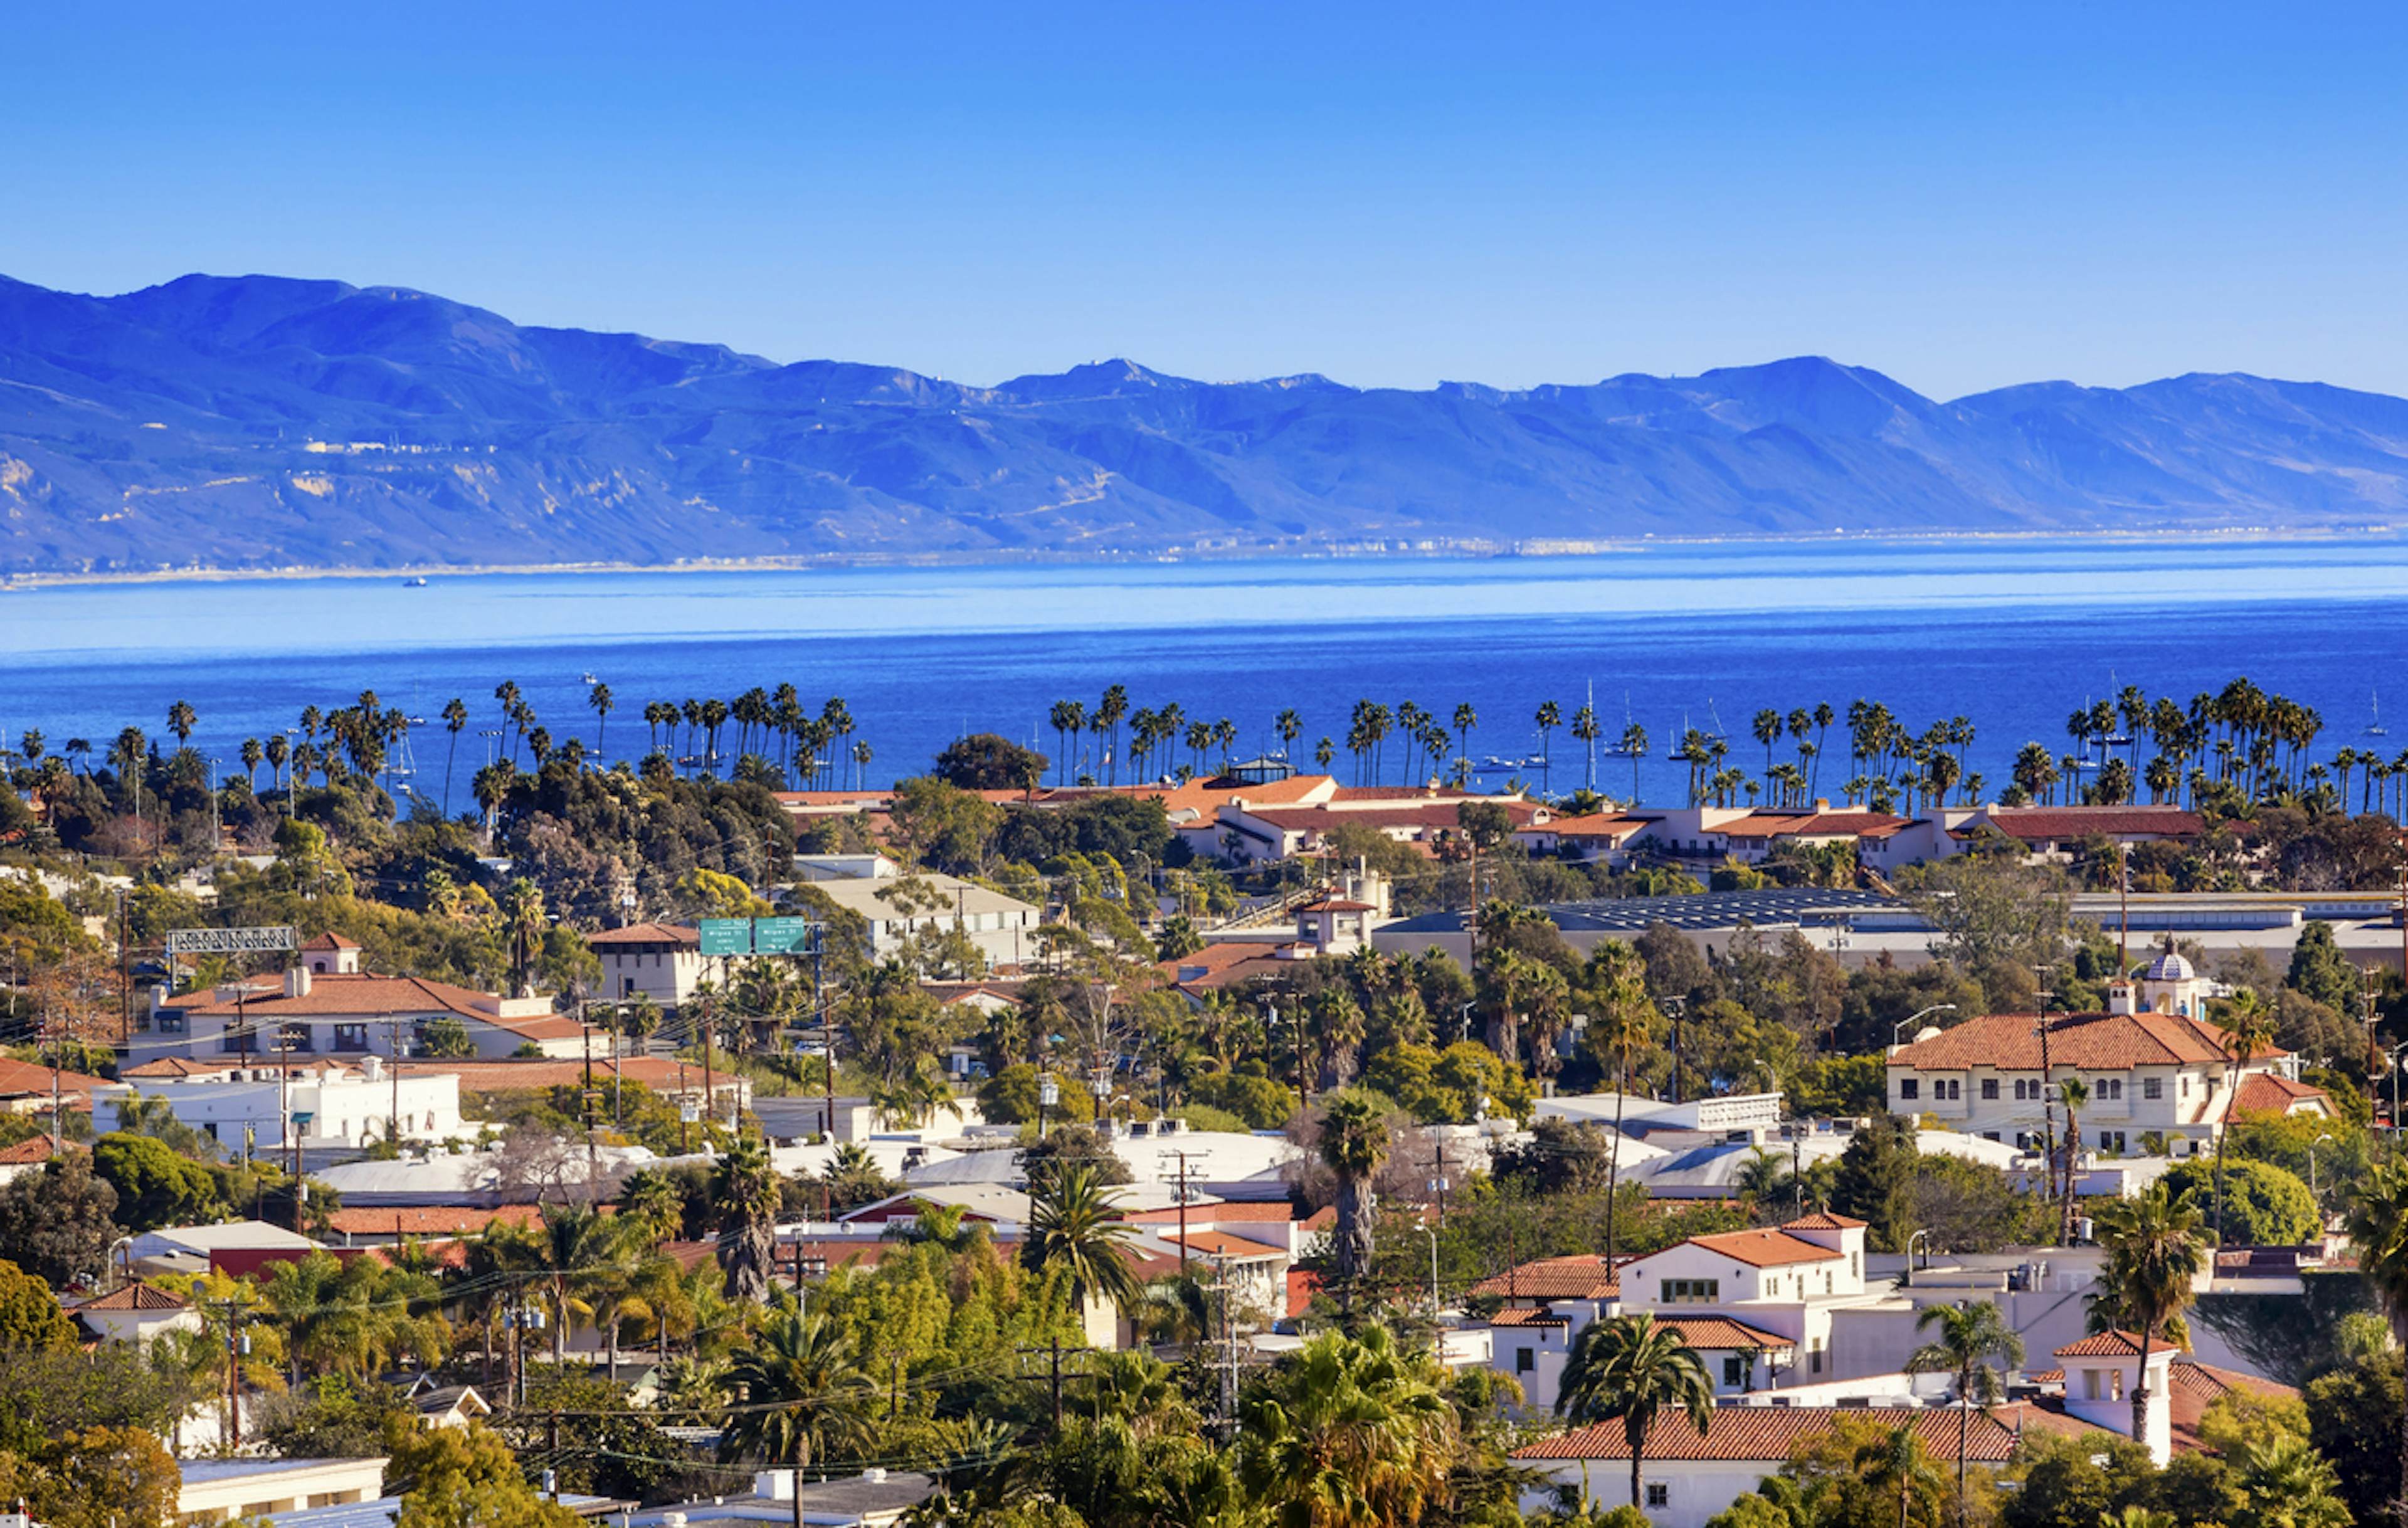 Santa Barbara image